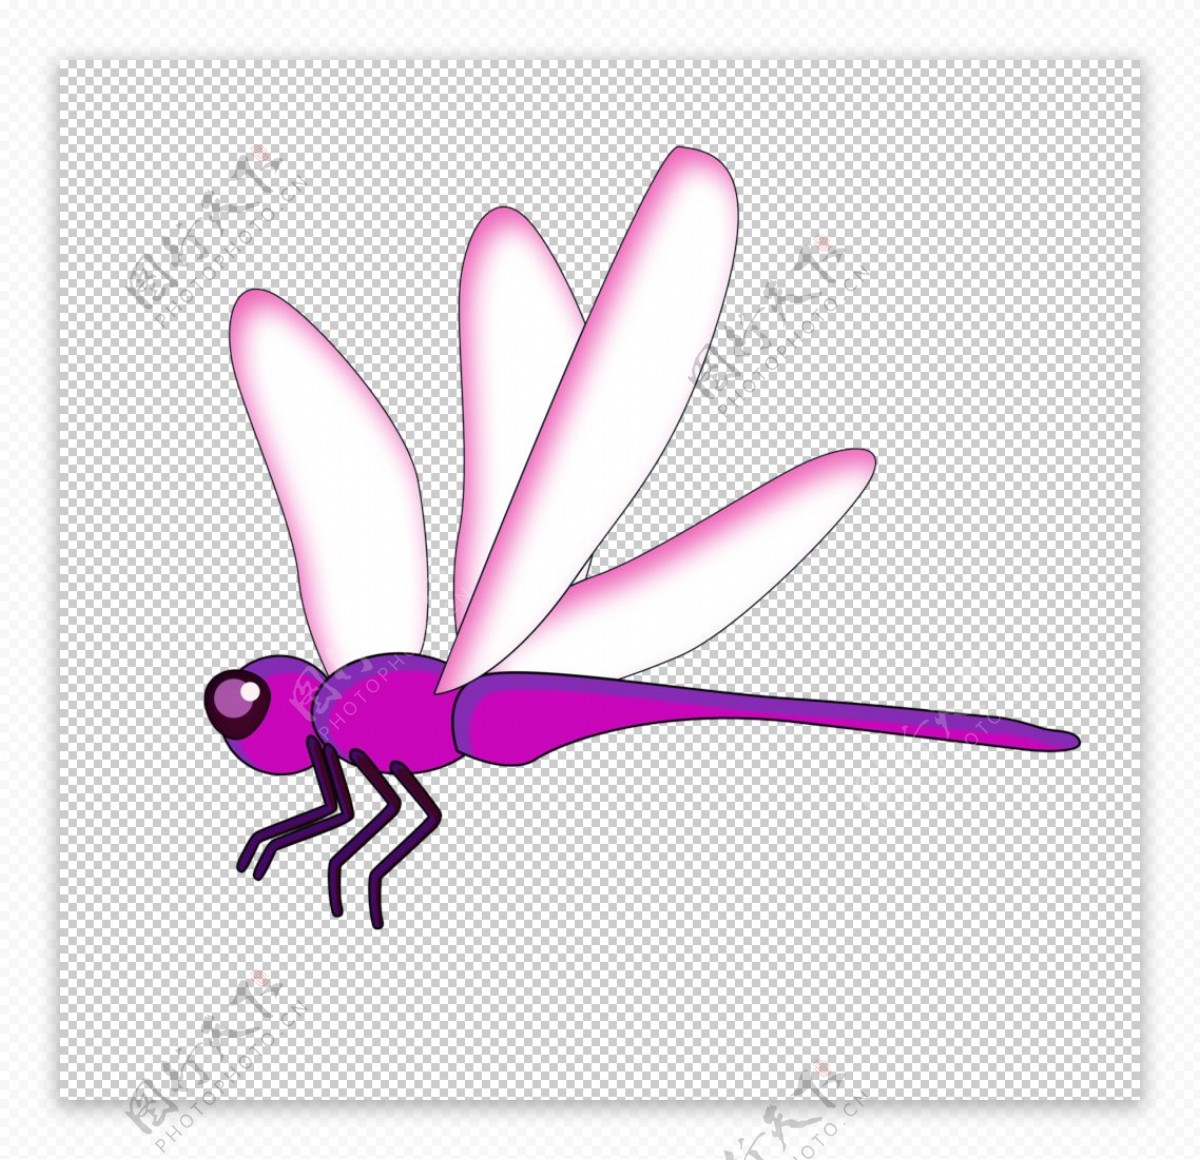 矢量手绘蜻蜓图片素材免费下载 - 觅知网